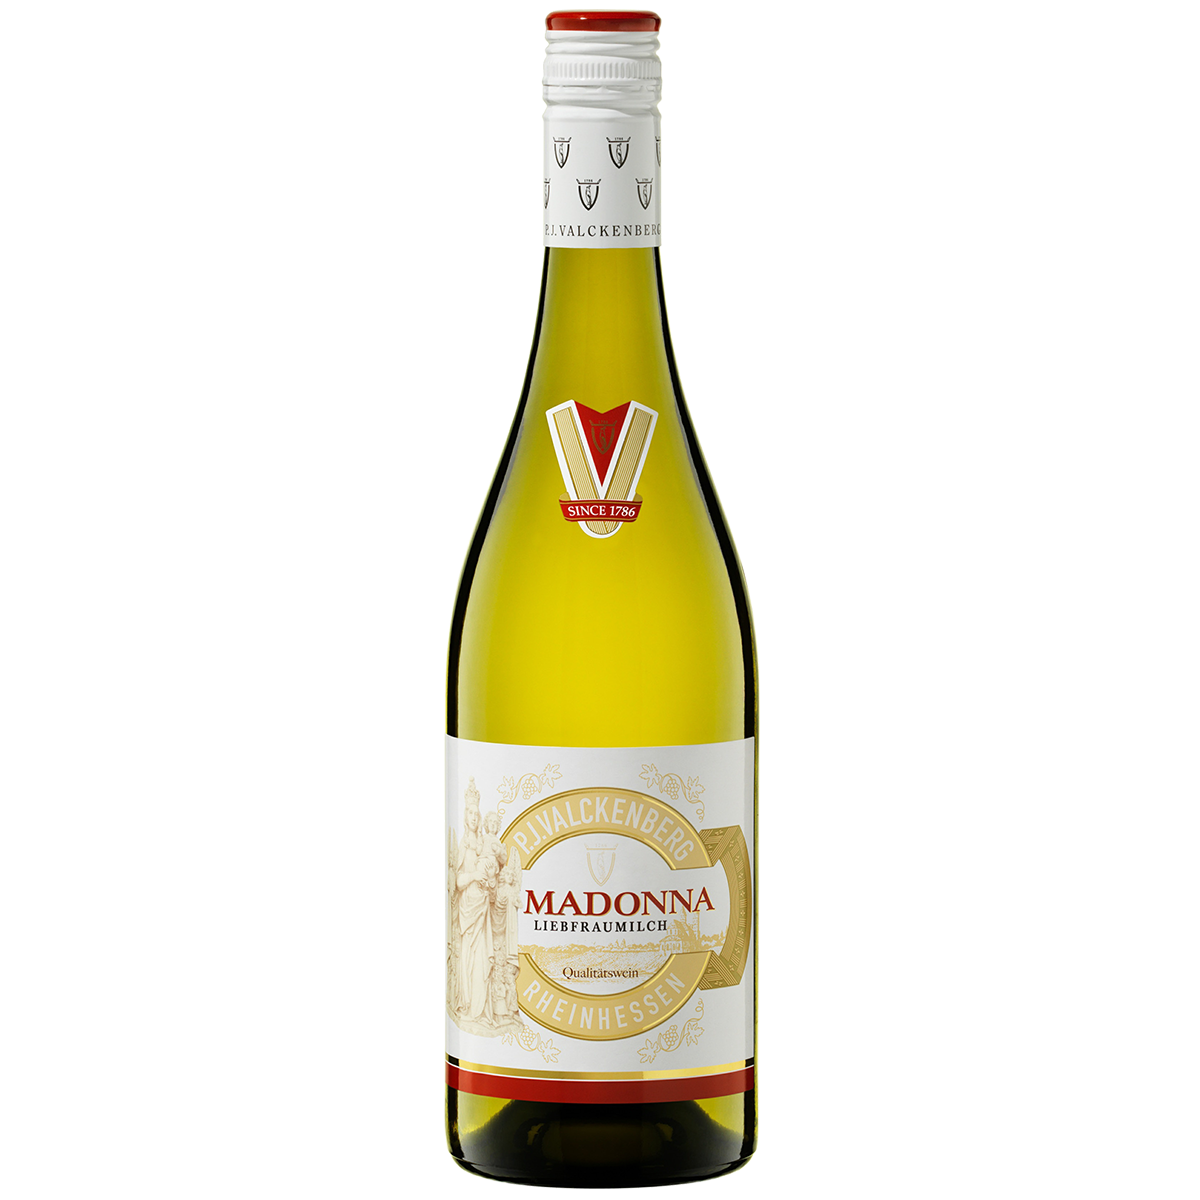 DEV2101 德國范根堡瑪丹娜聖母之乳2017高級白葡萄酒 P. J. Valckenberg MADONNA Liebfraumilch QbA (750ML)